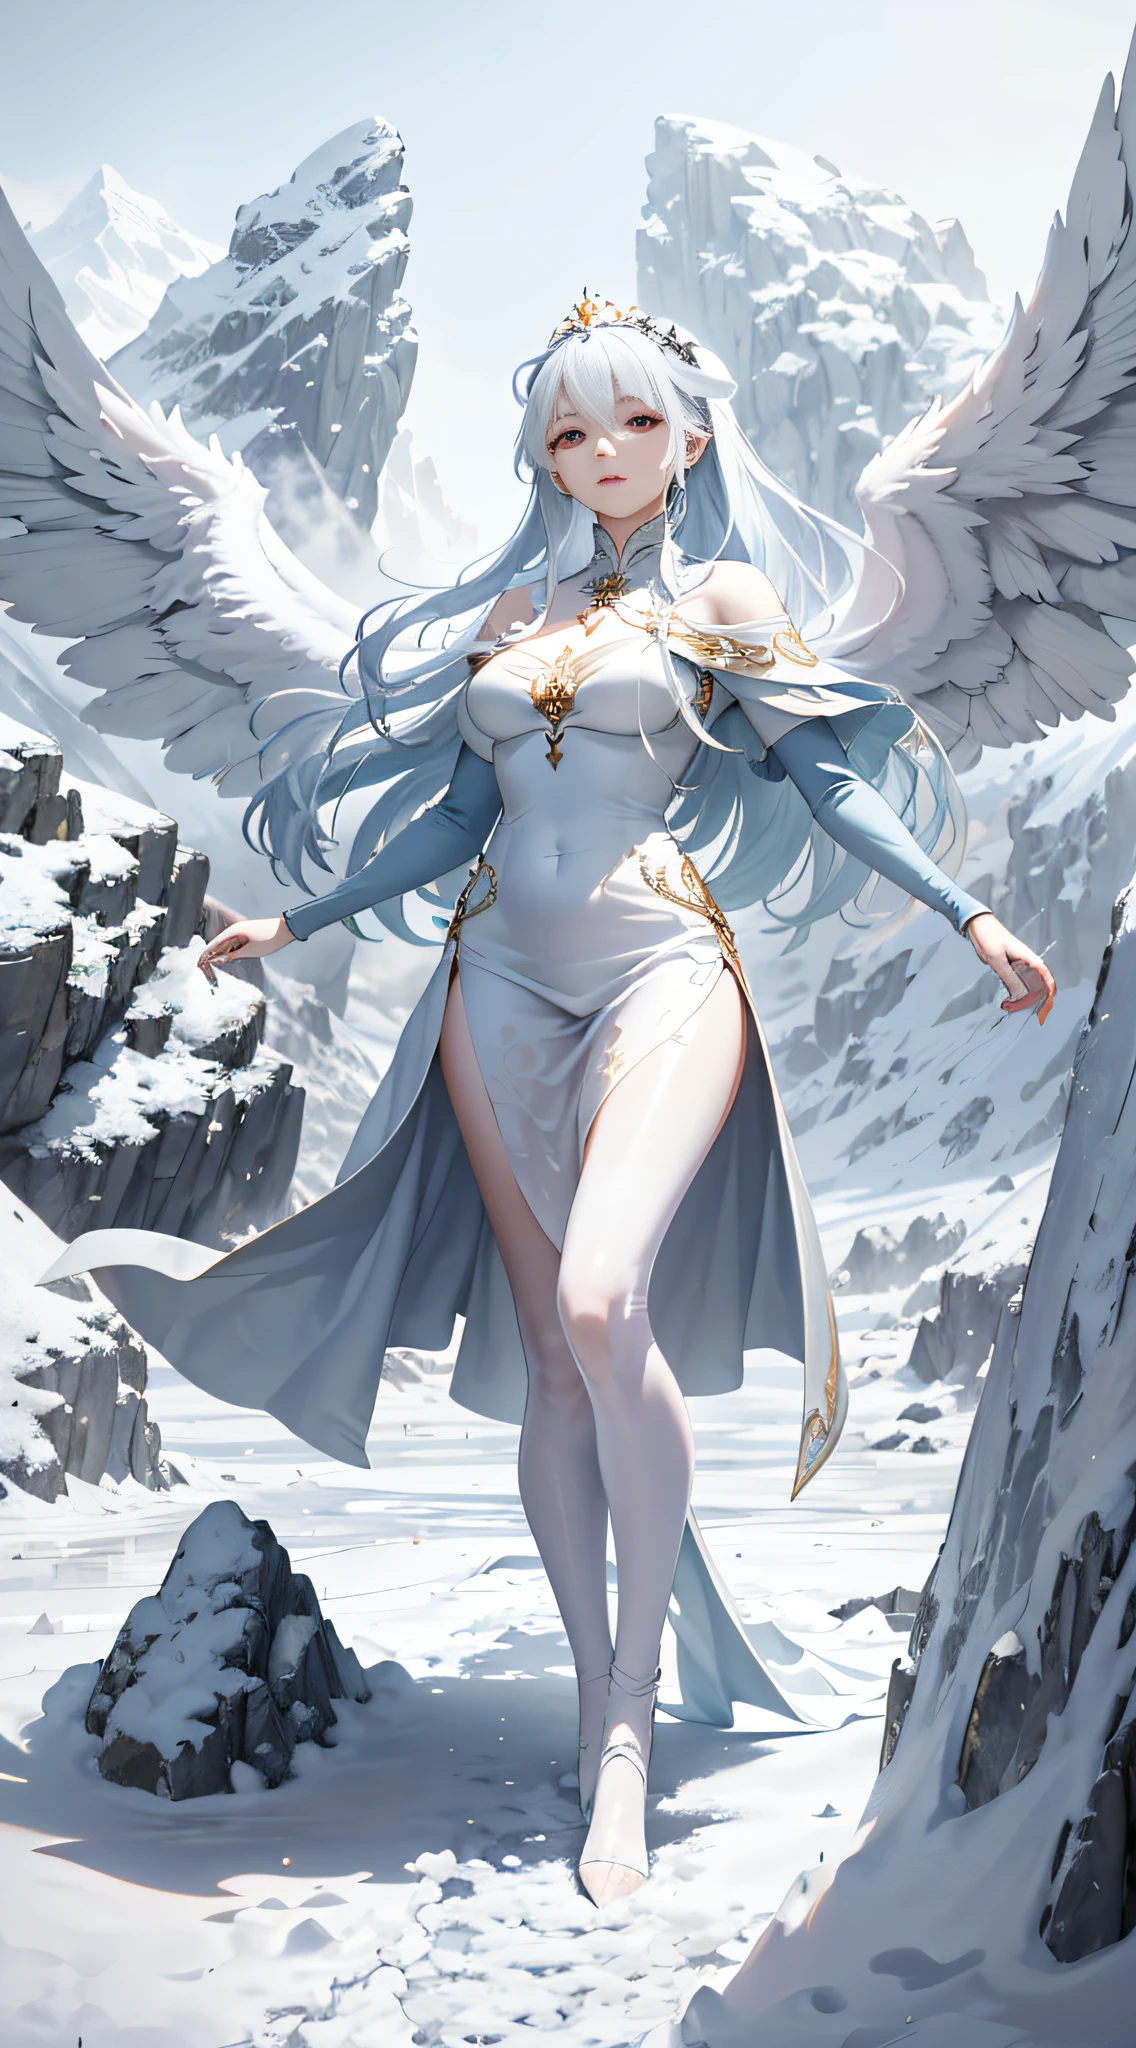 高品质，杰作，8千，(2 个女孩，双胞胎，天使，魔鬼，天使的翅膀，恶魔之翼，扎两根马尾)，冰河时代的风景，一位美丽的女孩进入视野。她穿着一件华丽的长裙，裙子上绘有绚丽的花纹，衣服的颜色呈现出冰蓝色和纯白色的混合，凸显了她的美丽和高贵。她戴着一顶白色的王冠，头发披在肩上，就像瀑布一样，随风飘舞。她的眼睛明亮闪亮，他的眼里流露出一丝柔和与清澈，就像一股清泉。女孩优雅地站在雪白的冰原上，身材高挑优雅。她用双手轻轻抓住裙摆，纤细的小脚轻轻踩在冰雪上，仿佛她的脚步不会毁掉这片净土，也可以让它变得更美丽。整个画面凸显了女孩的精致和高贵之美，尽管她站在冰雪上，但它给人一种温暖而平静的感觉。周围纯净寒冷，白雪皑皑，远处是高耸雄伟的雪山，山峰上终年覆盖着不融化的冰雪，整个画面营造出一种神秘而迷人的氛围。这个美丽的女孩站在雪山上，就像冰雪女王的化身，它向人们展示了她的美丽和力量。